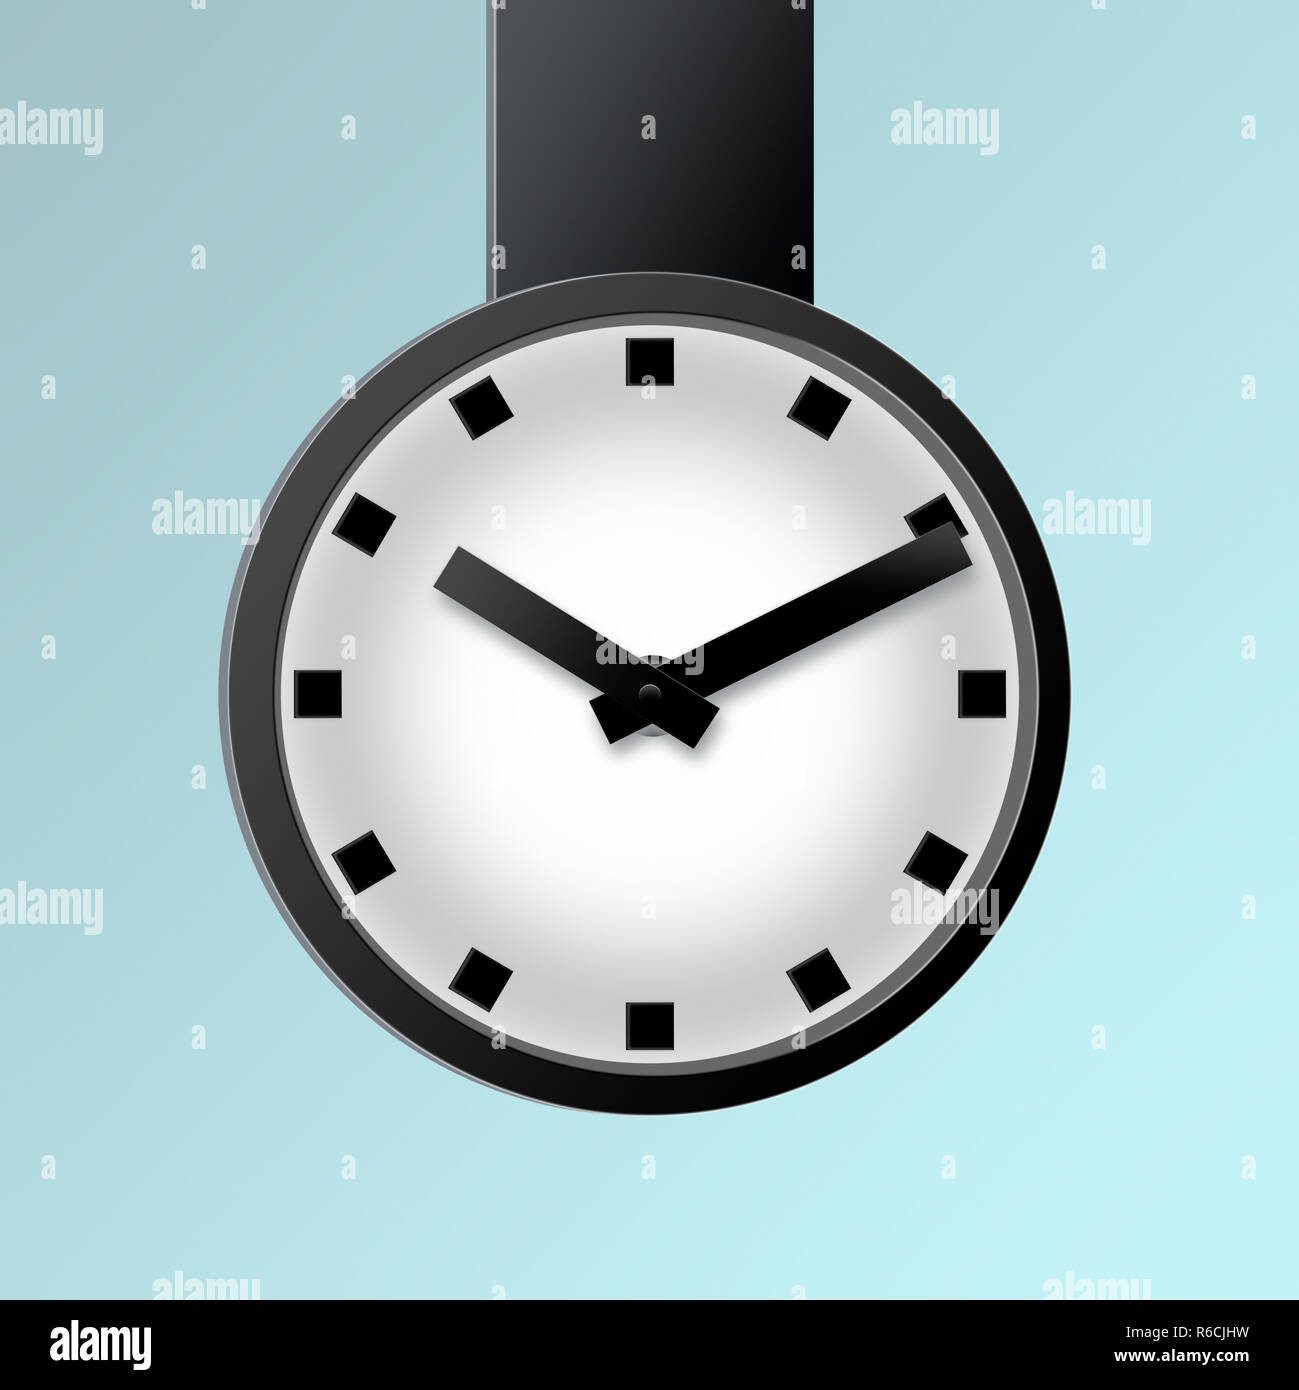 Illustrazione Digitale di semplice pubblico di grandi dimensioni appesi orologio in bianco e nero con uno sfondo chiaro Foto Stock